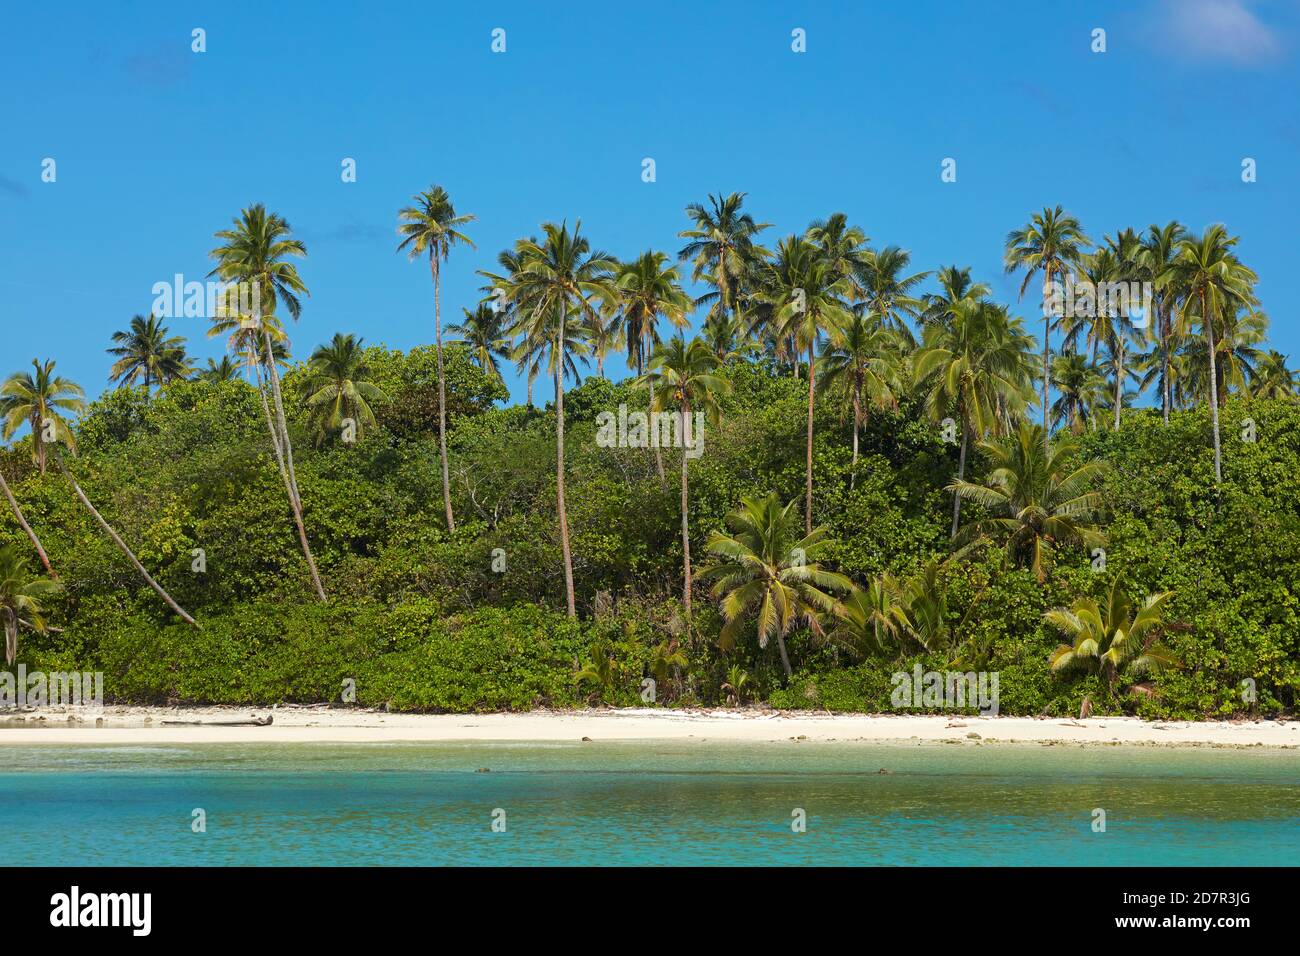 Palm Trees and beach, Motutapu Island, Muri Lagoon, Rarotonga, Cook Islands, South Pacific Stock Photo